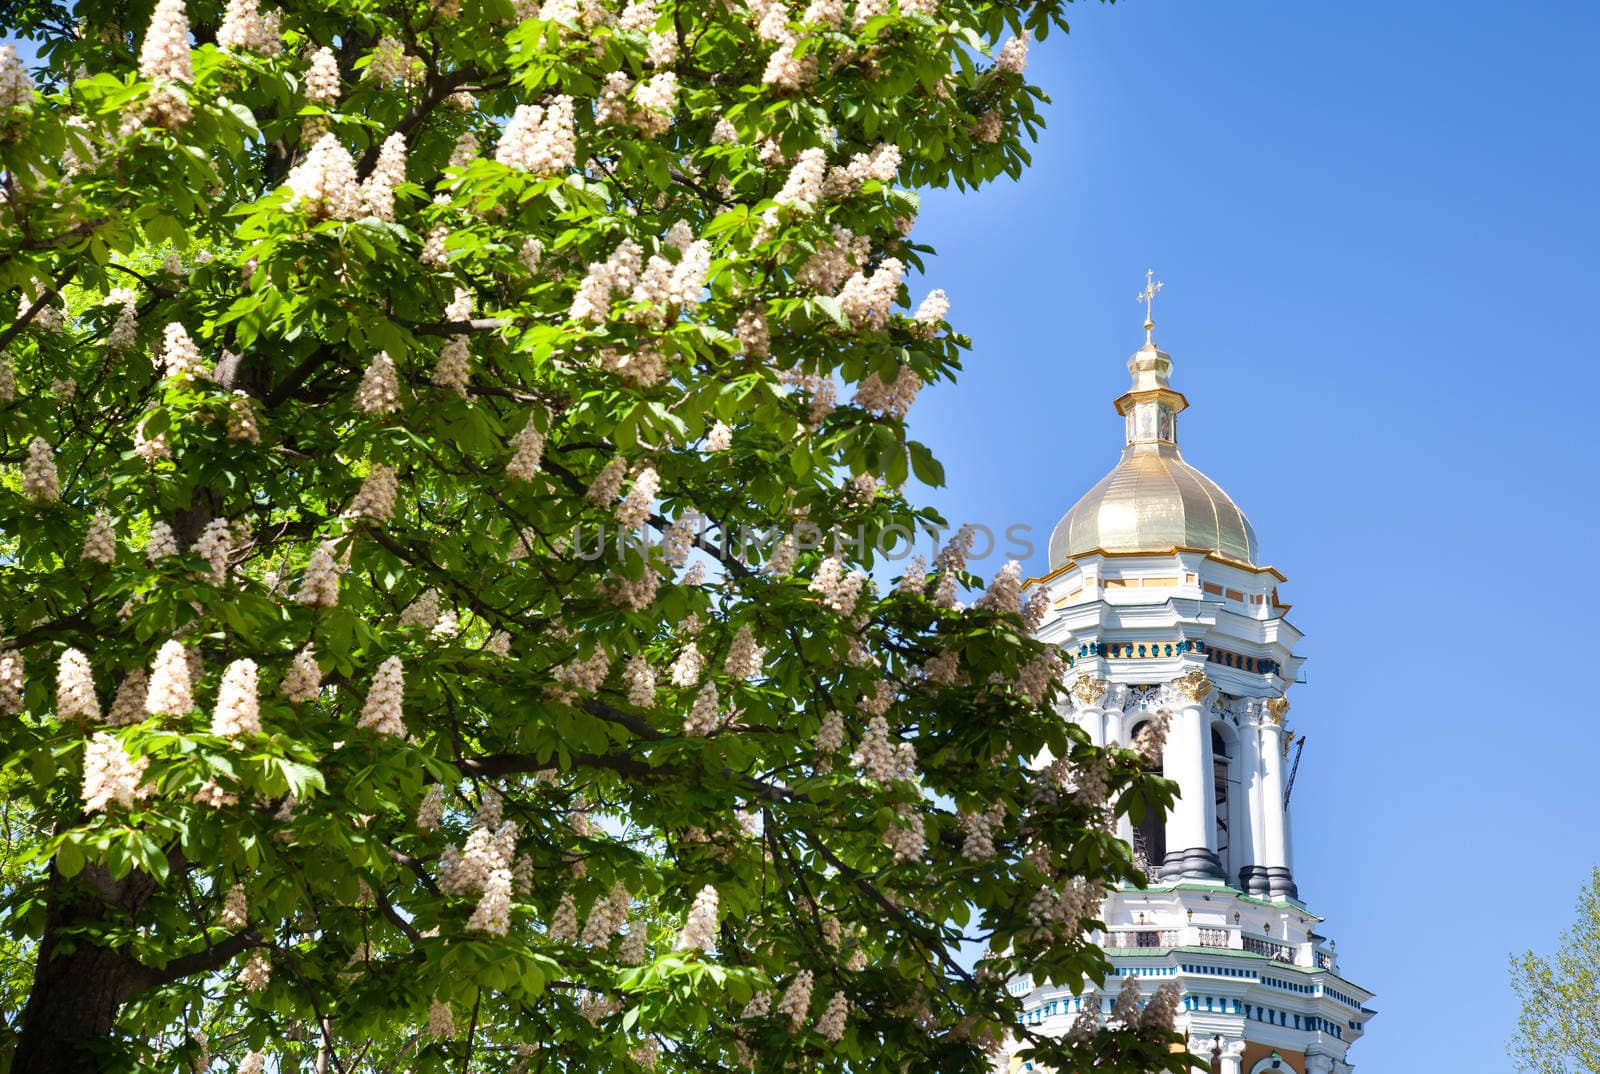 Kiev Pechersk Lavra monastery and chesnut tree in blossom